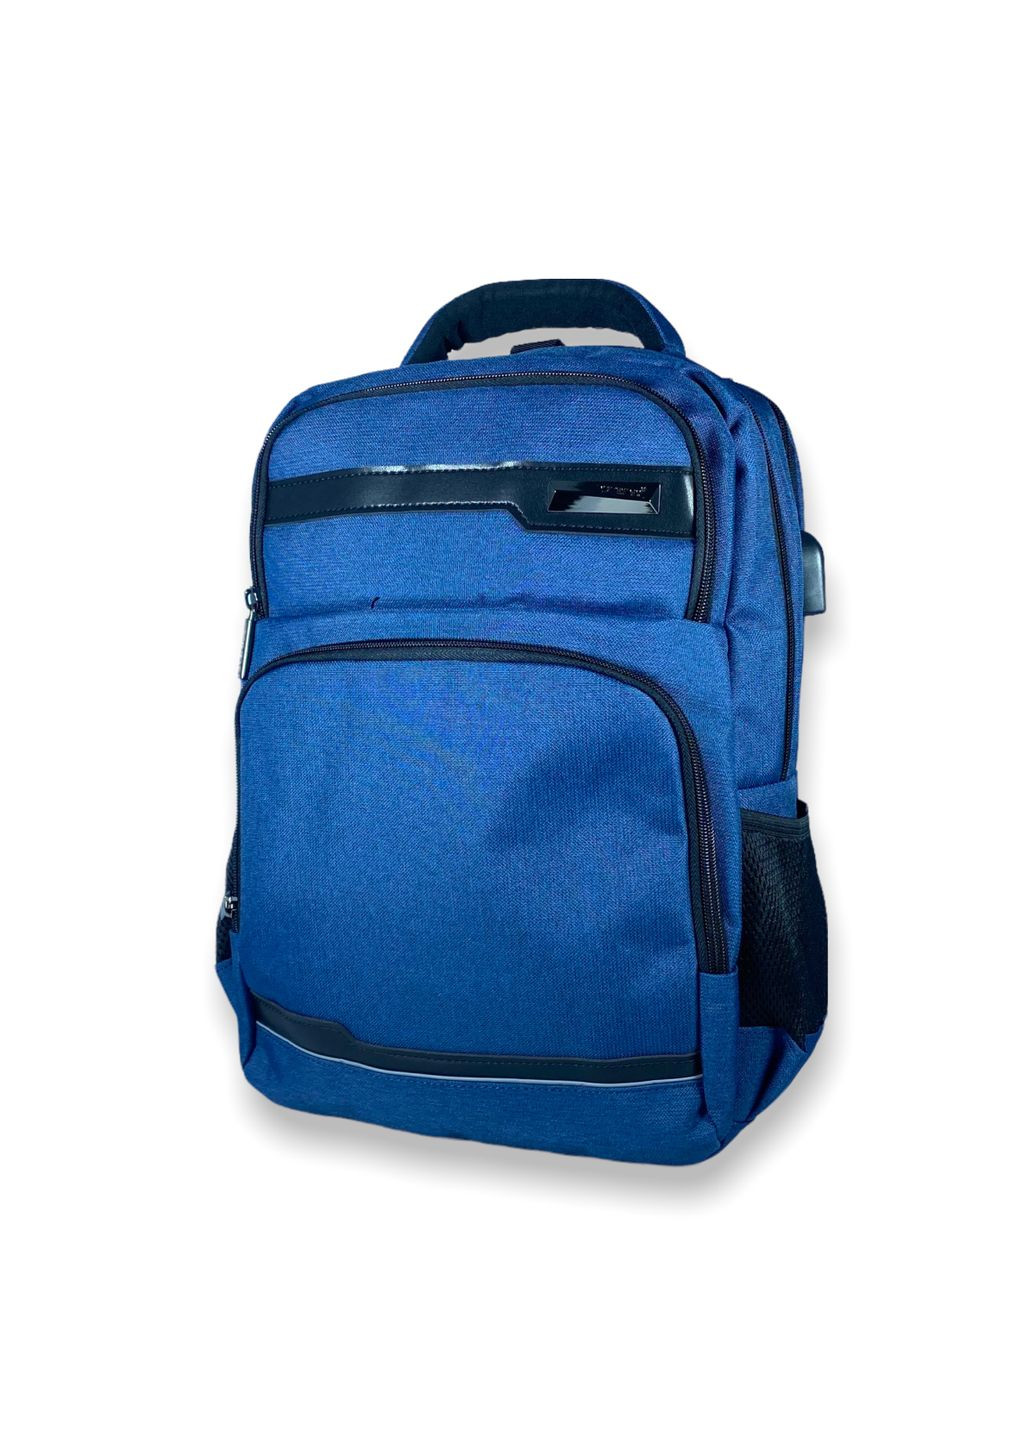 Міський рюкзак 15 л, три відділи, USB роз'єм, кабель, одна фронтальна кишеня, розмір: 40*28*14 см, синій Catesigo (284338145)